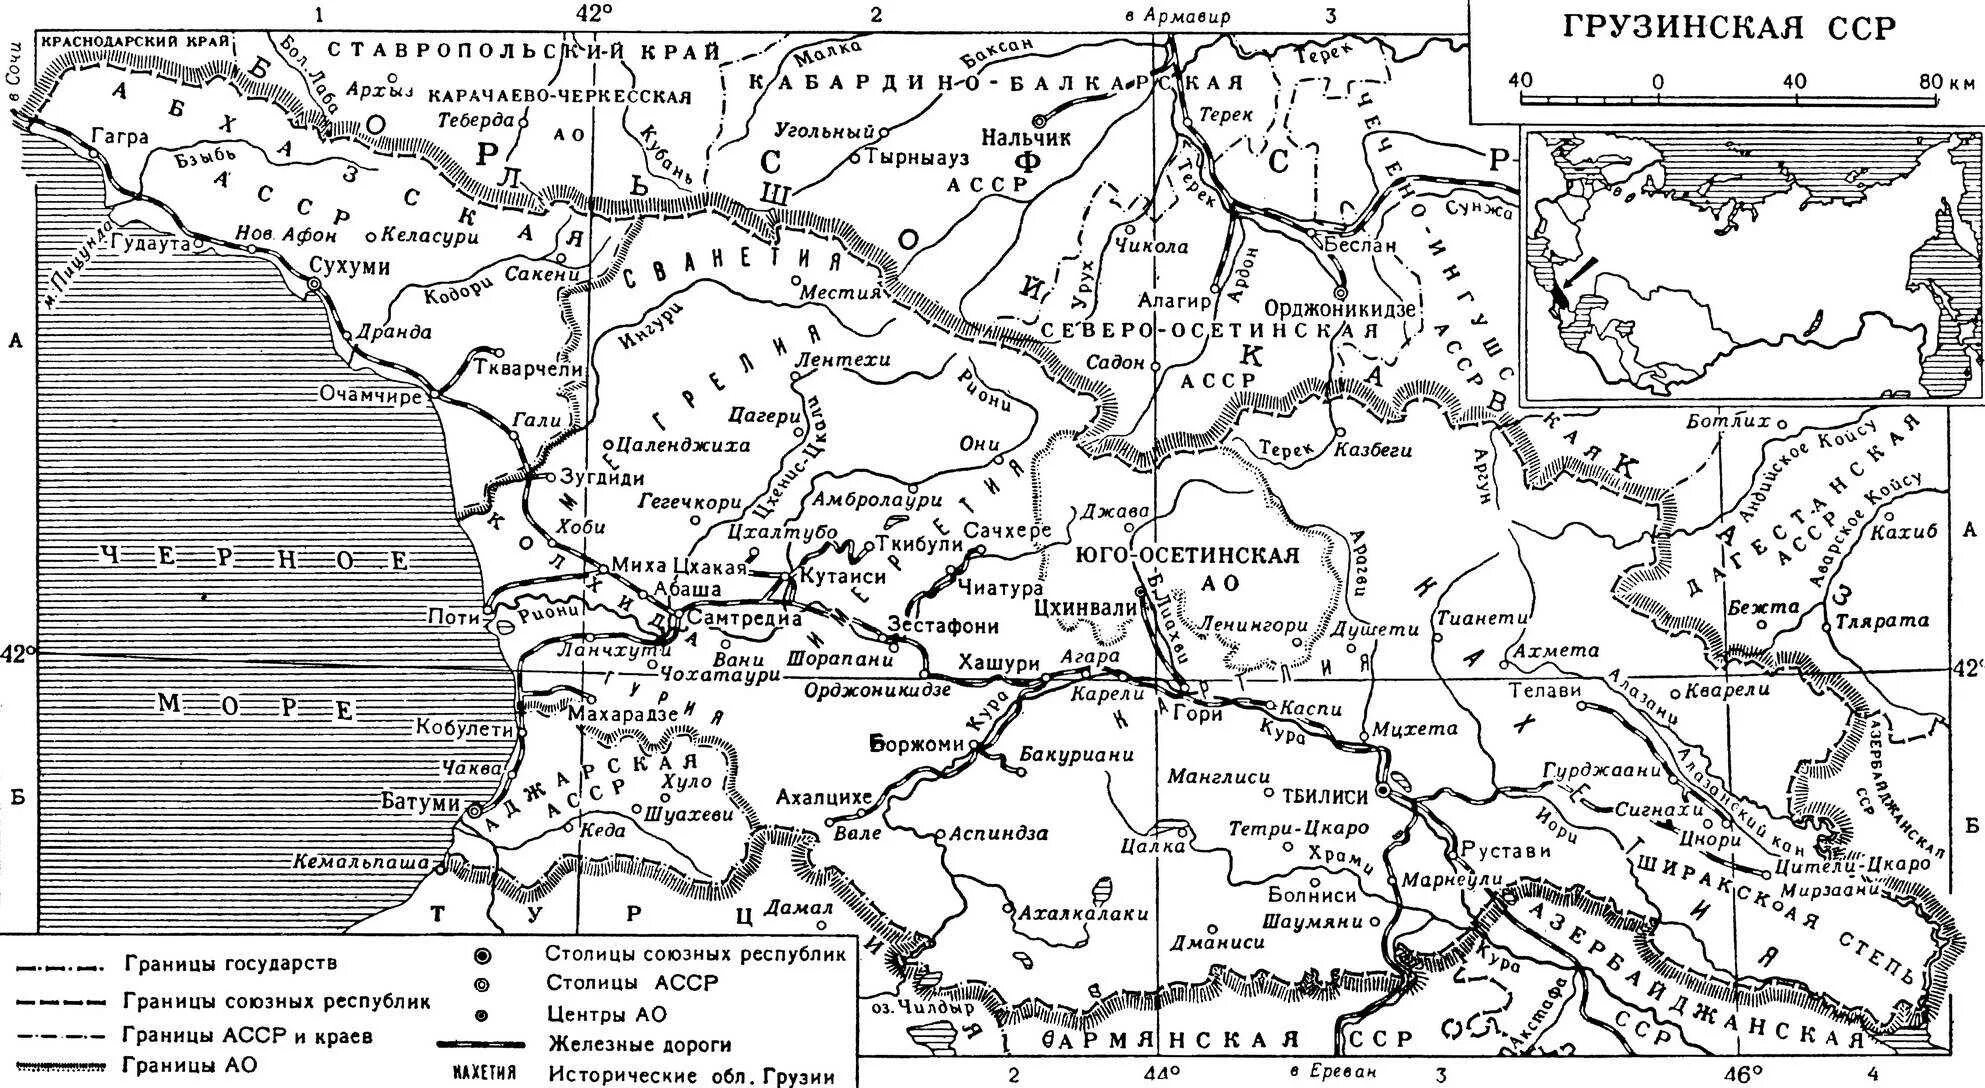 Грузинская ССР на карте СССР. Карта Советской Грузии. Грузия на карте СССР. Карта грузинской ССР 1980 года.